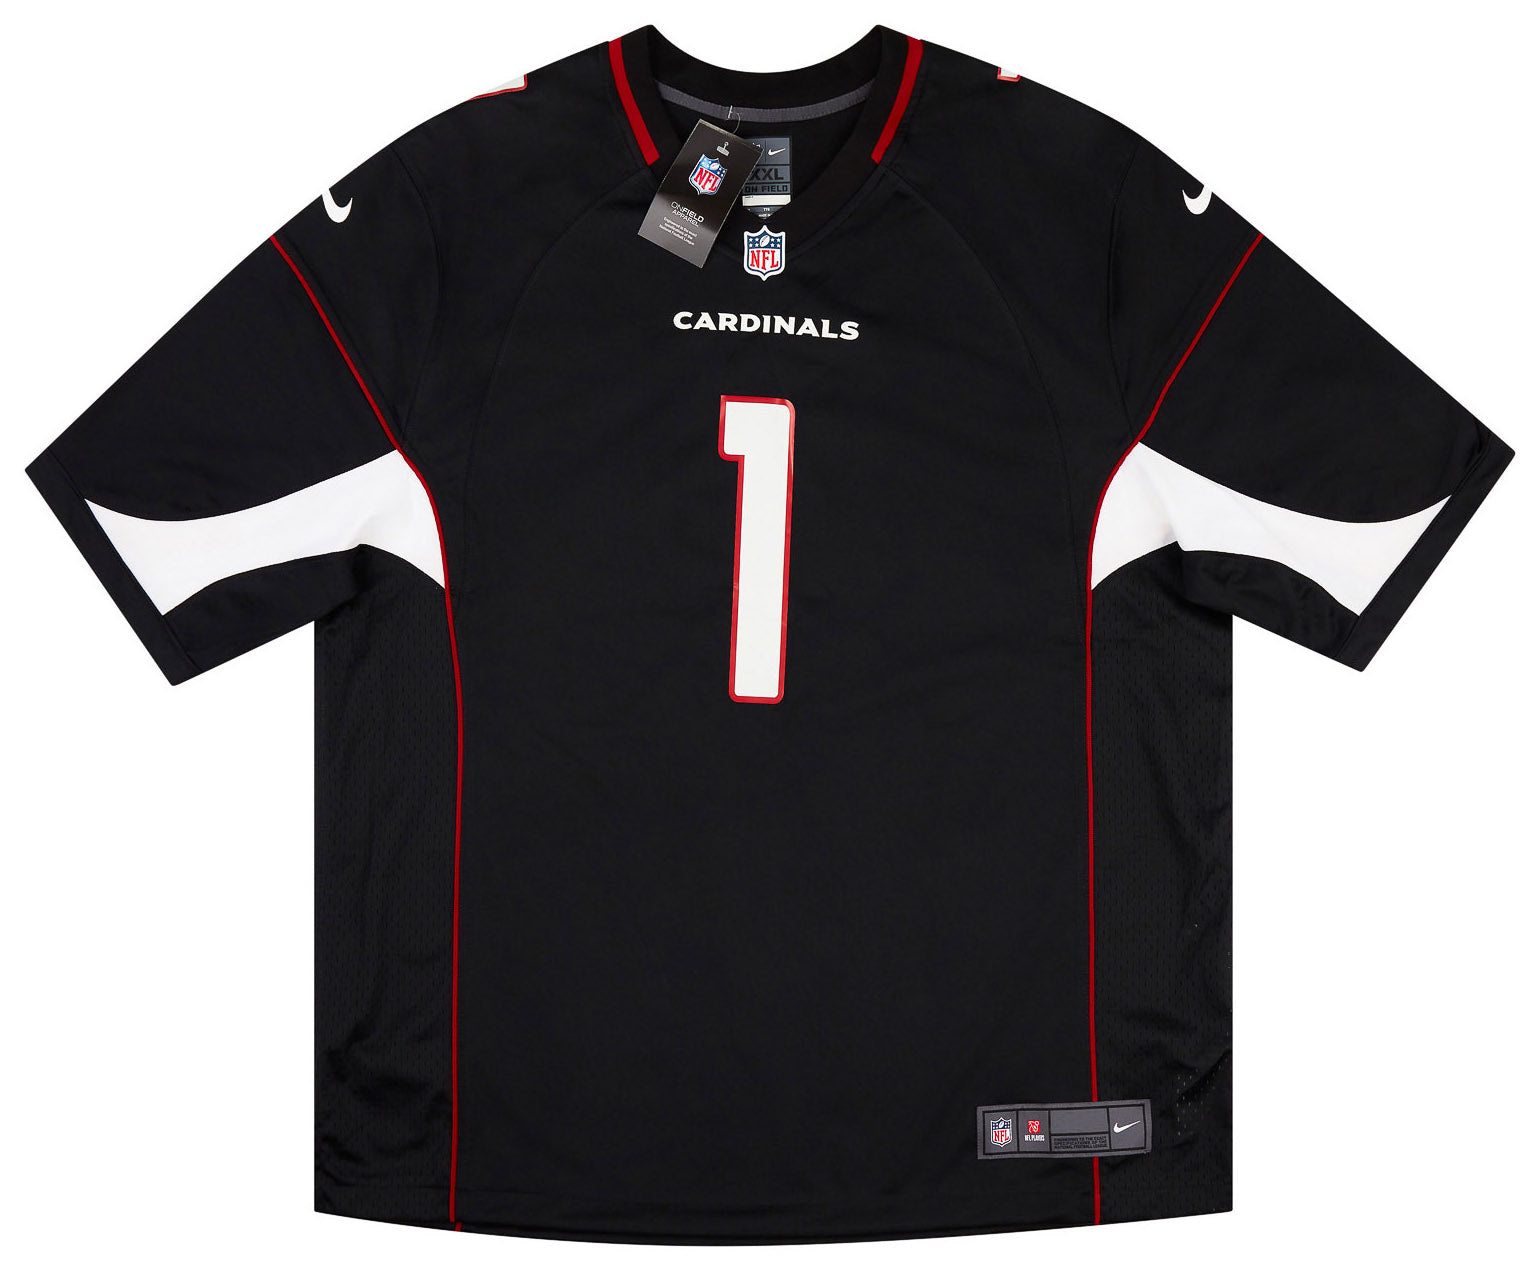 Nike NFL Arizona Cardinals Kyler Murray #1 Game Jersey